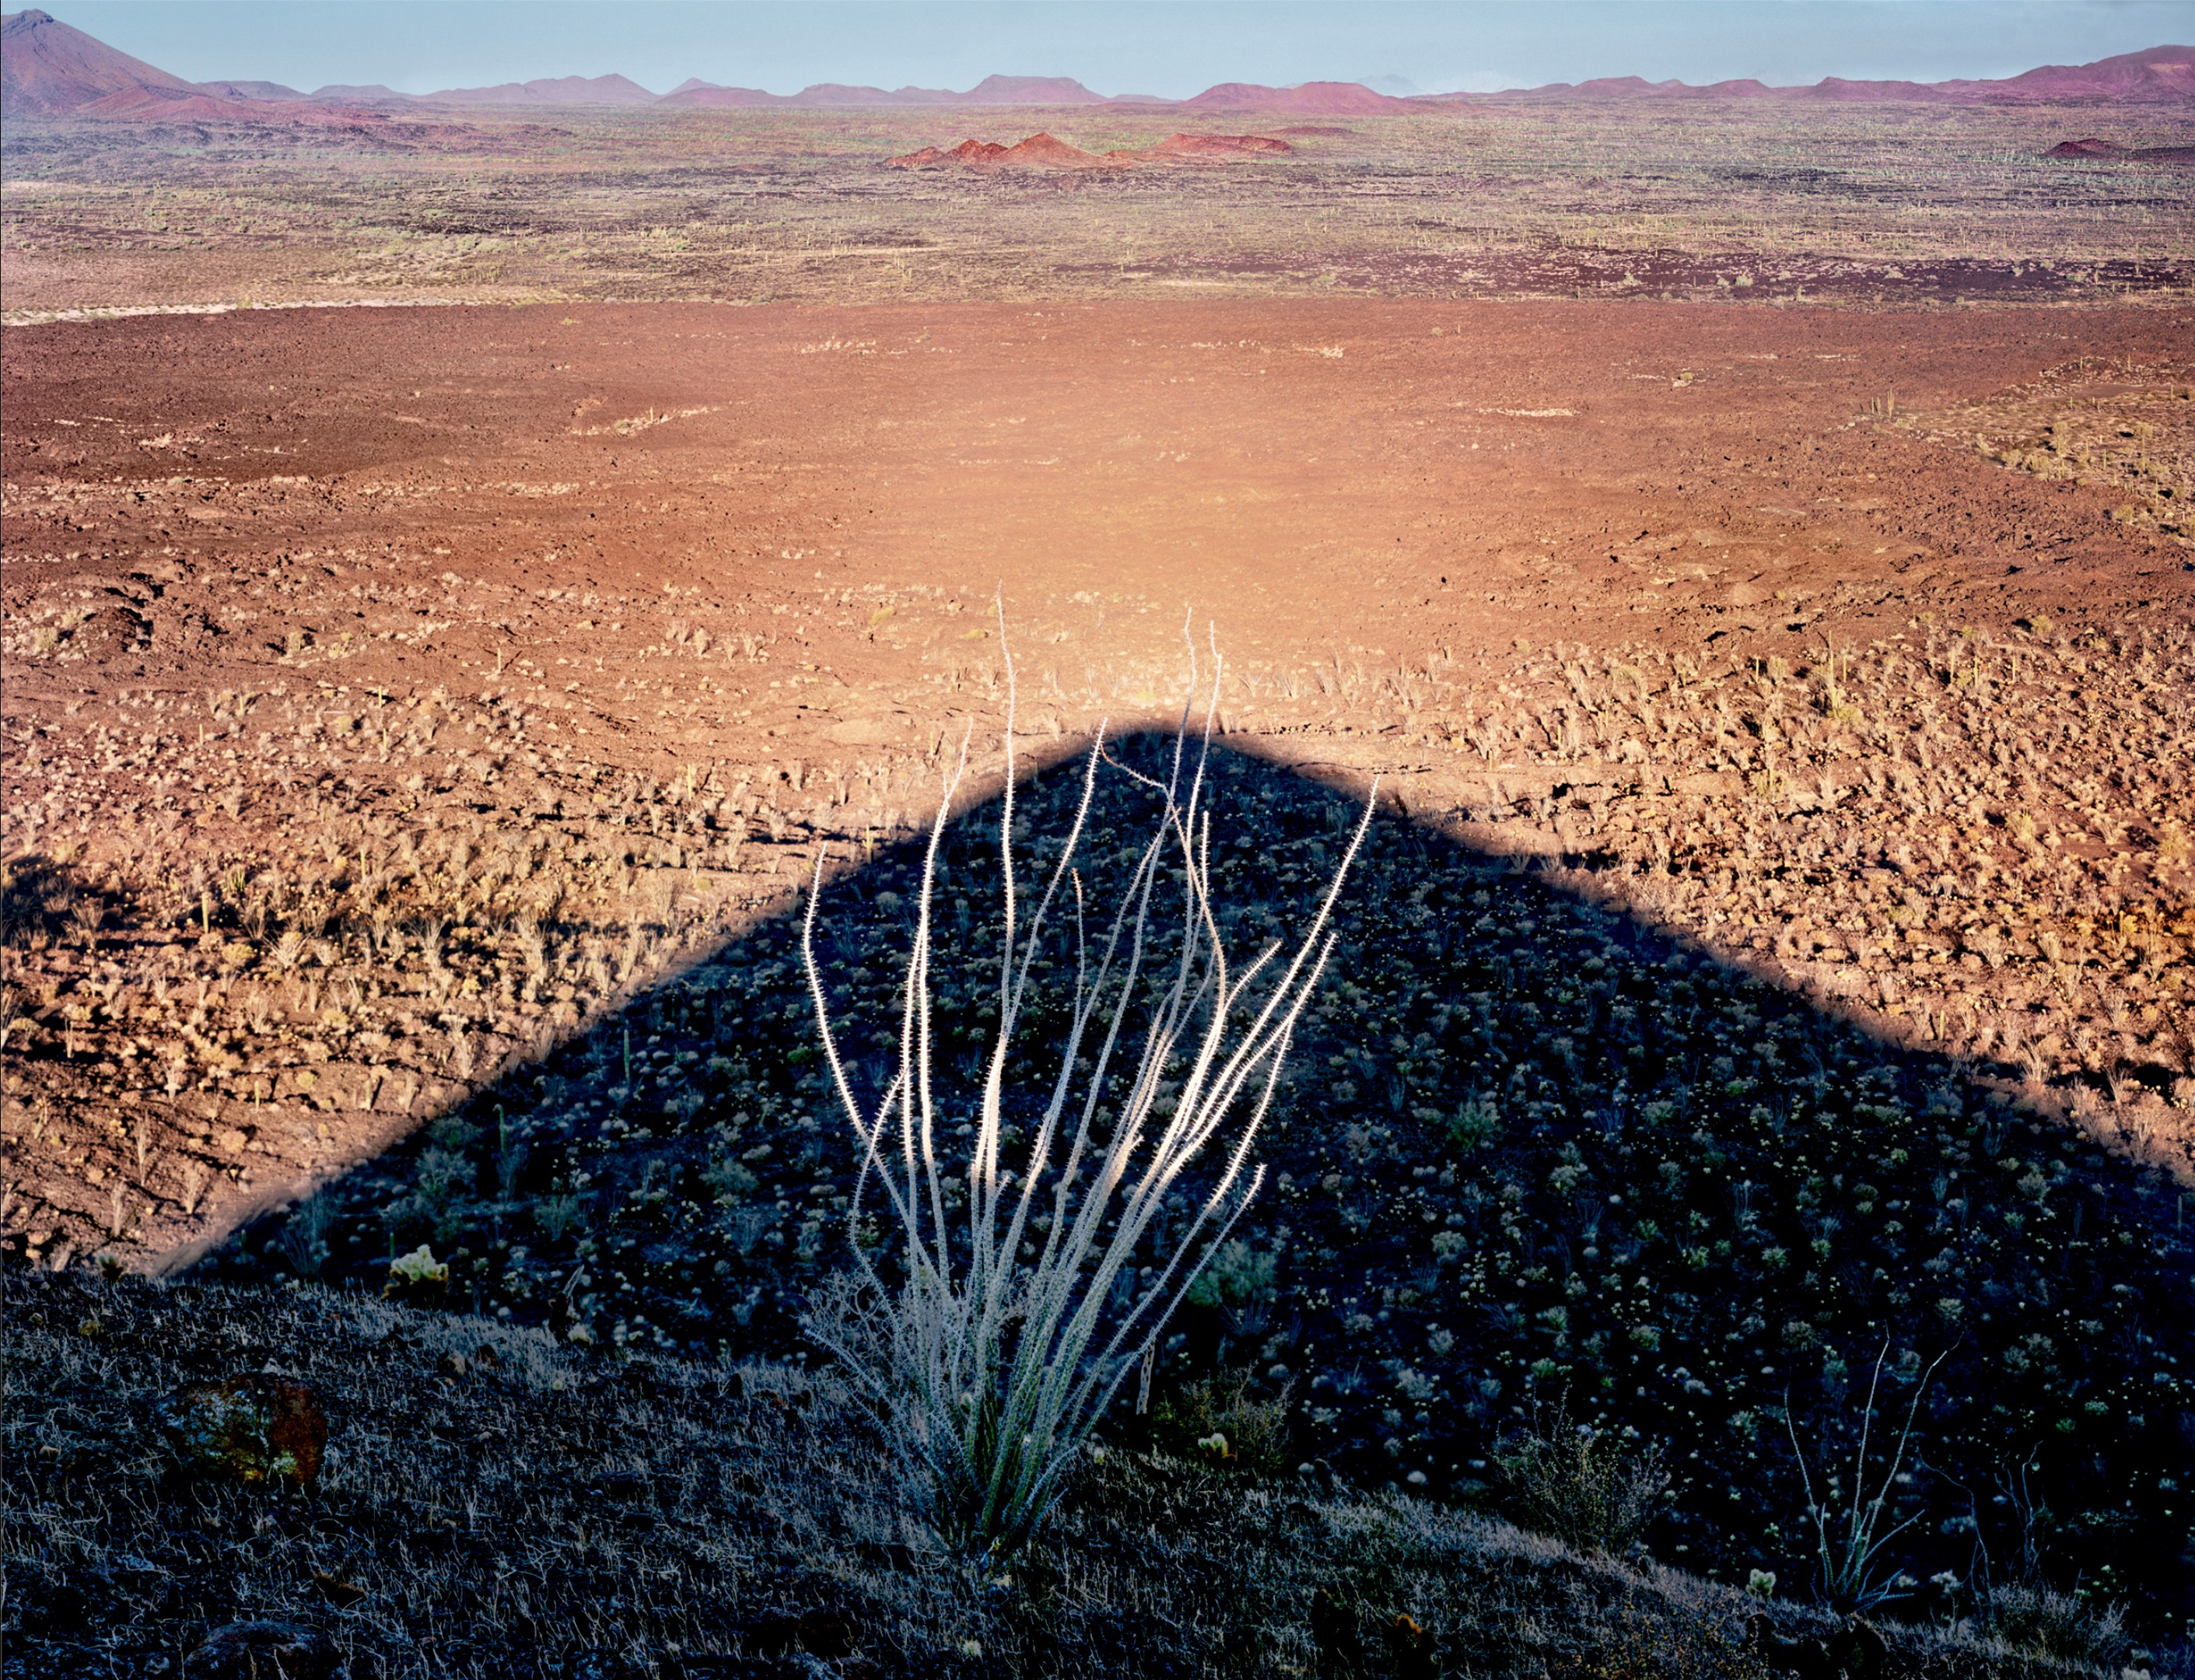 Octillo, El Cono Rojo, near El Sierra Pinacate, Sonoran Desert, Mexico